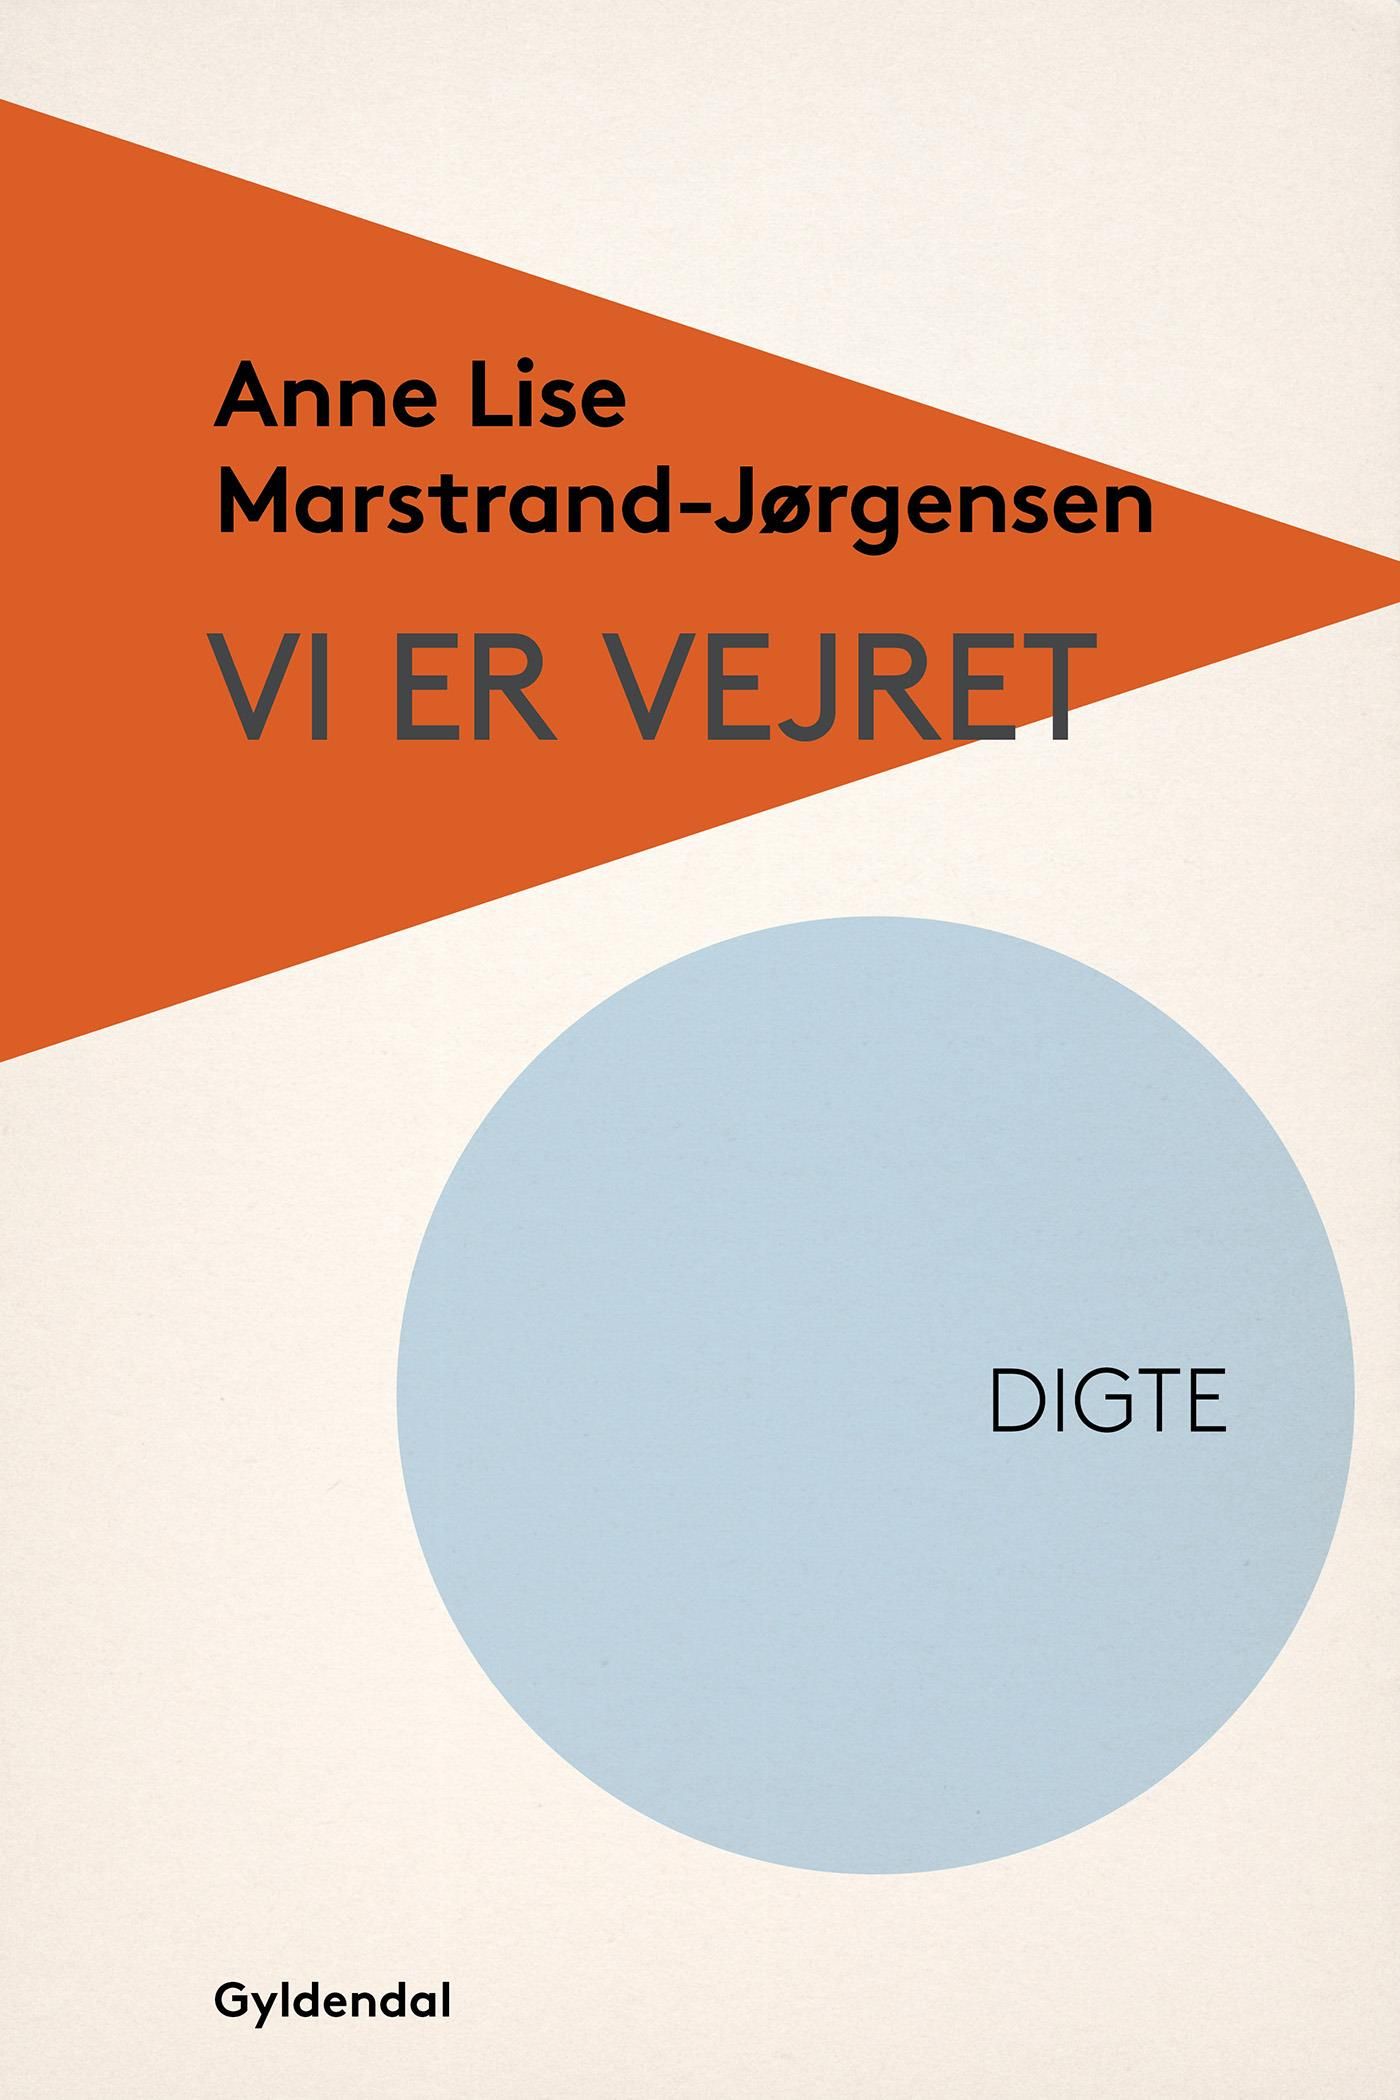 Vi er vejret, eBook by Anne Lise Marstrand-Jørgensen